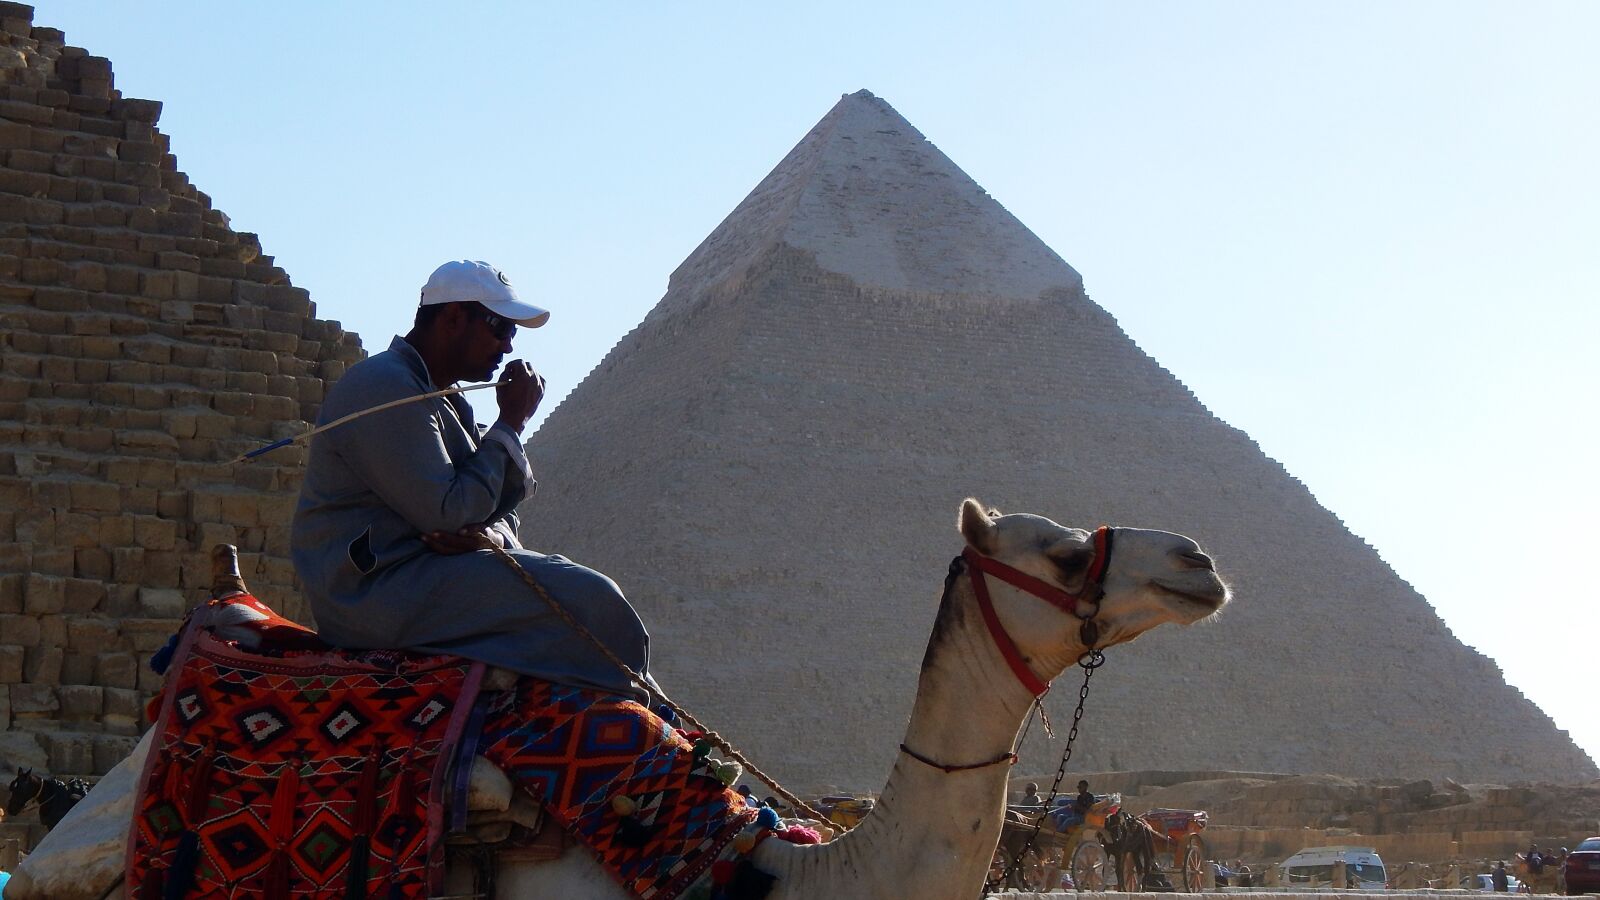 Nikon Coolpix L830 sample photo. Pyramid, camel, egypt photography